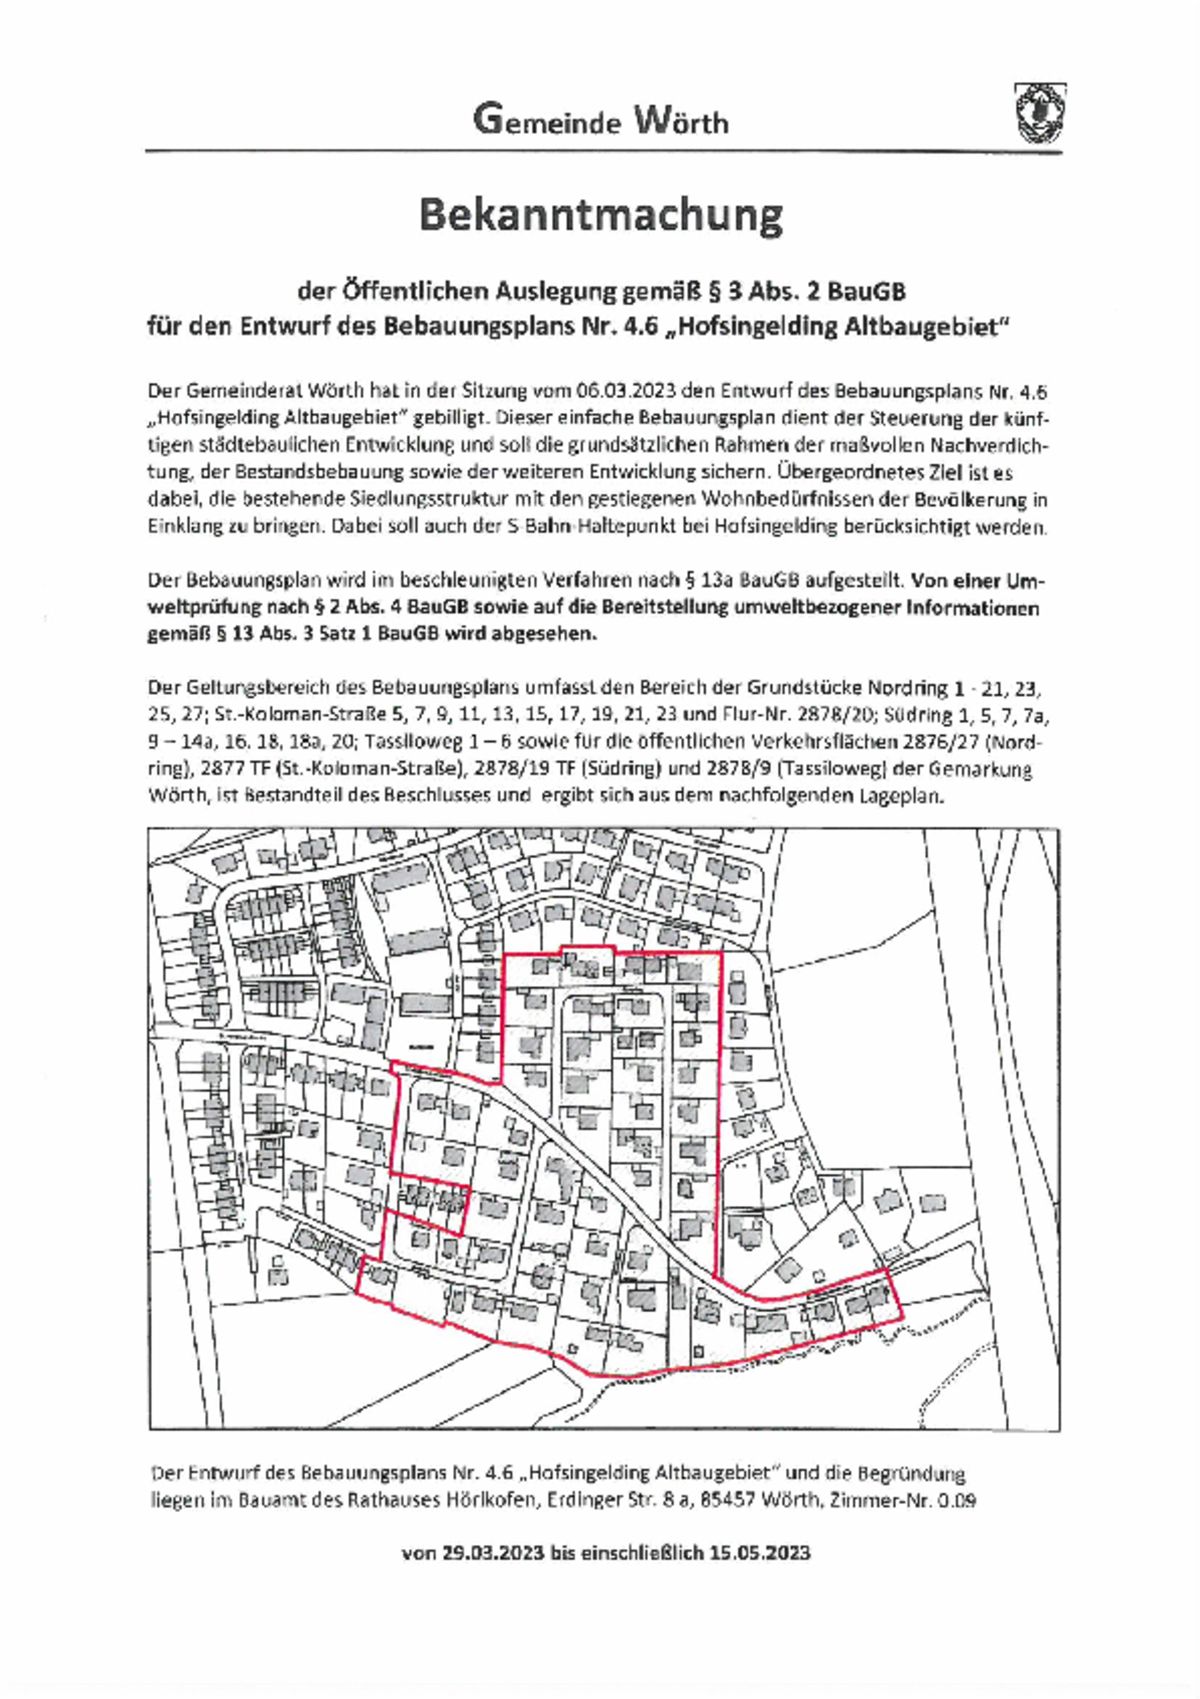 Bekanntmachung der öffentlichen Auslegung Entwurf des Bebauungsplans Nr. 4.6 Hofsingelding Altbaugebiet